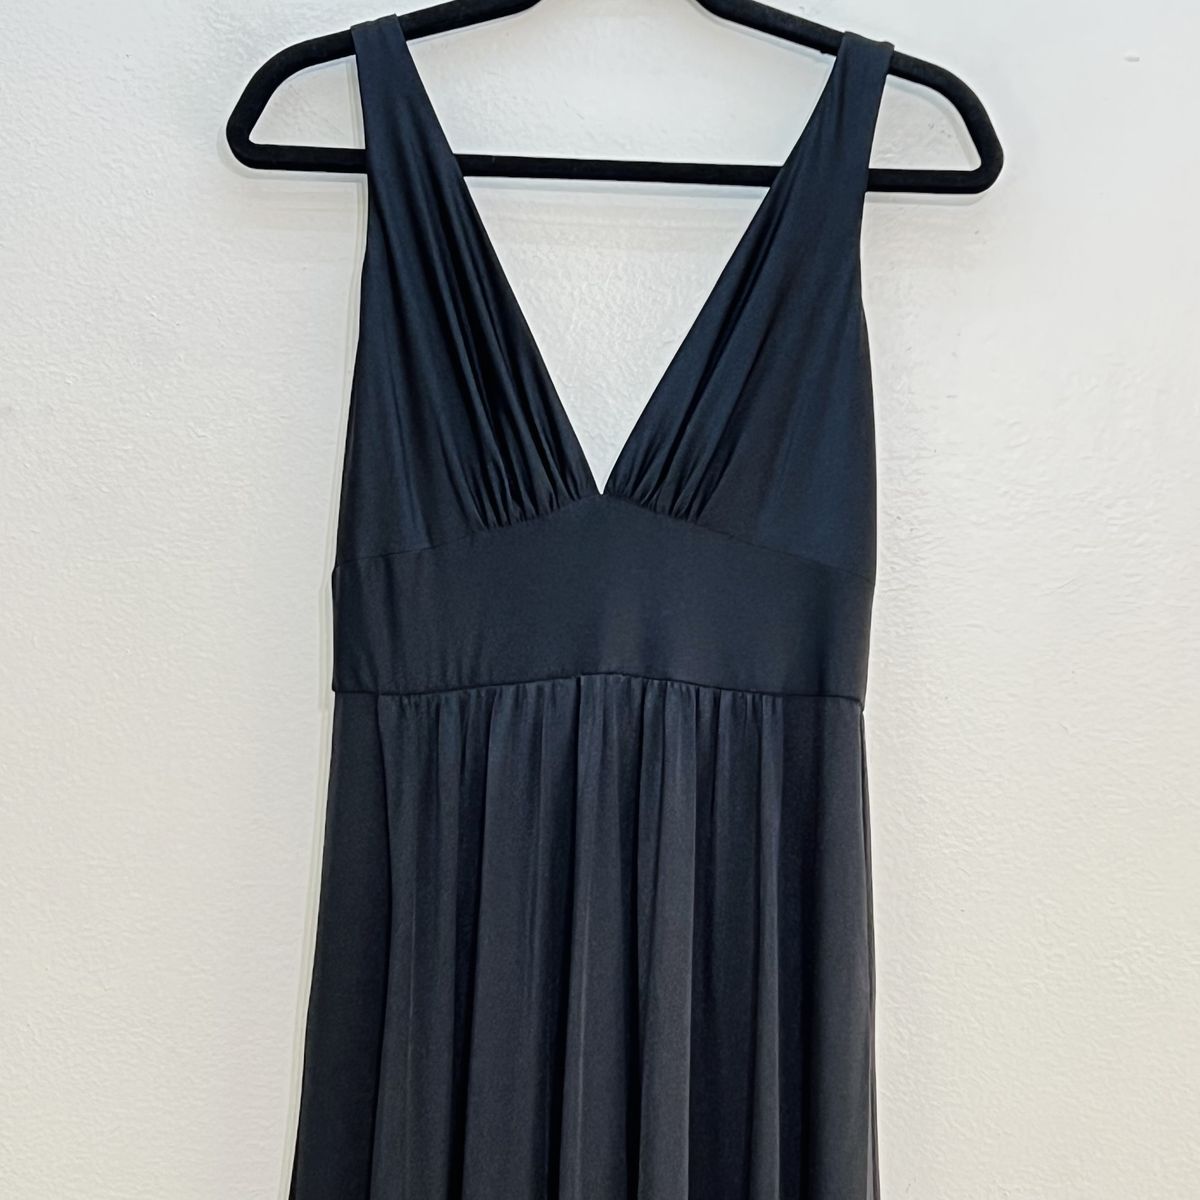 Style 28547 La Femme Size 14 Plunge Black Side Slit Dress on Queenly